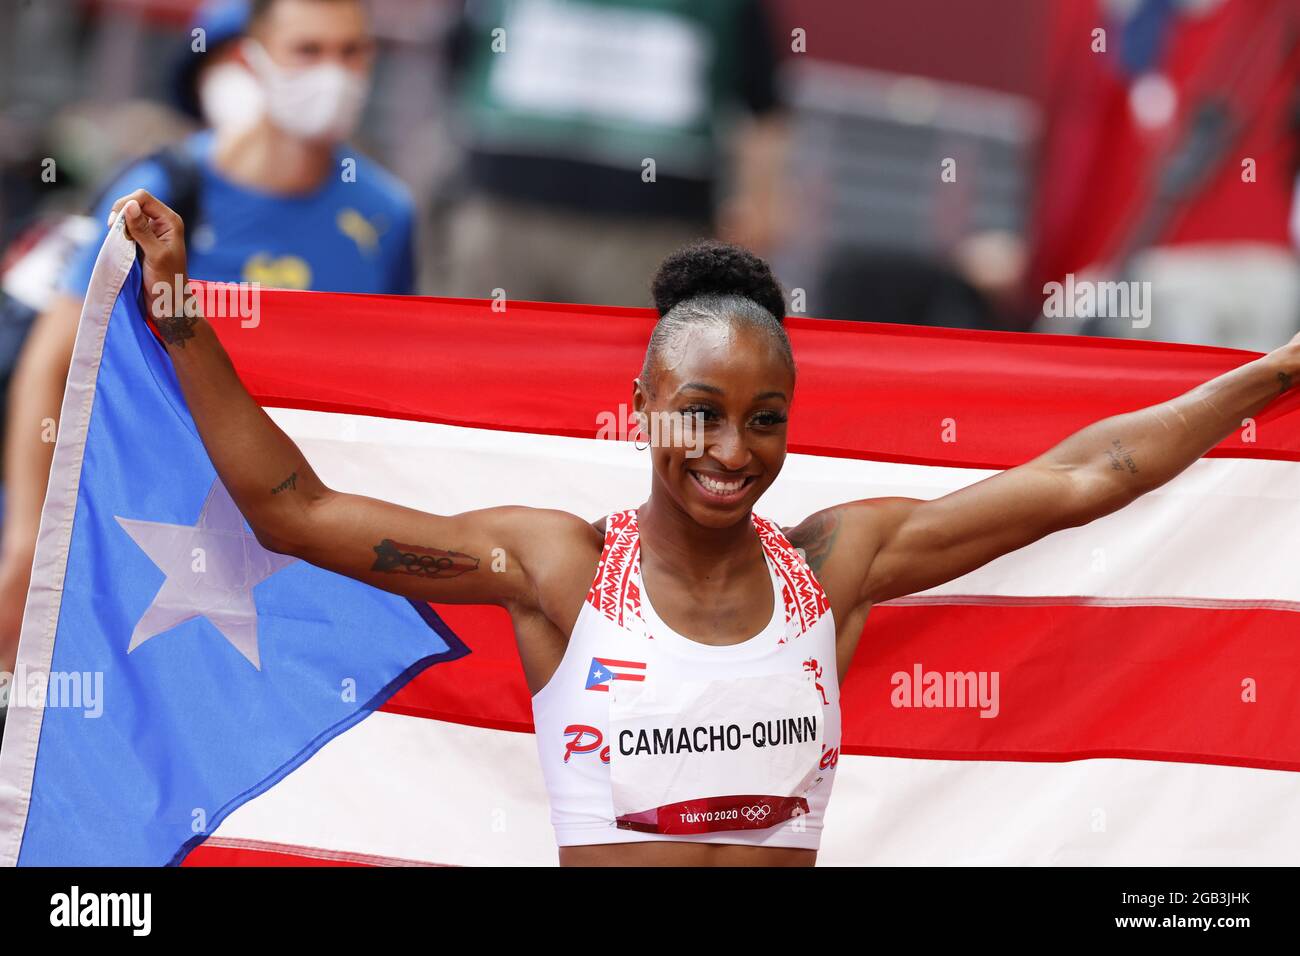 Jasmine CAMACHO-QUINN (PUR) lauréate de la Médaille d'or lors des Jeux Olympiques Tokyo 2020, finale de 100m haies des femmes athlétiques le 2 août 2021 au Stade olympique de Tokyo, Japon - photo Kishimoto / DPPI Banque D'Images